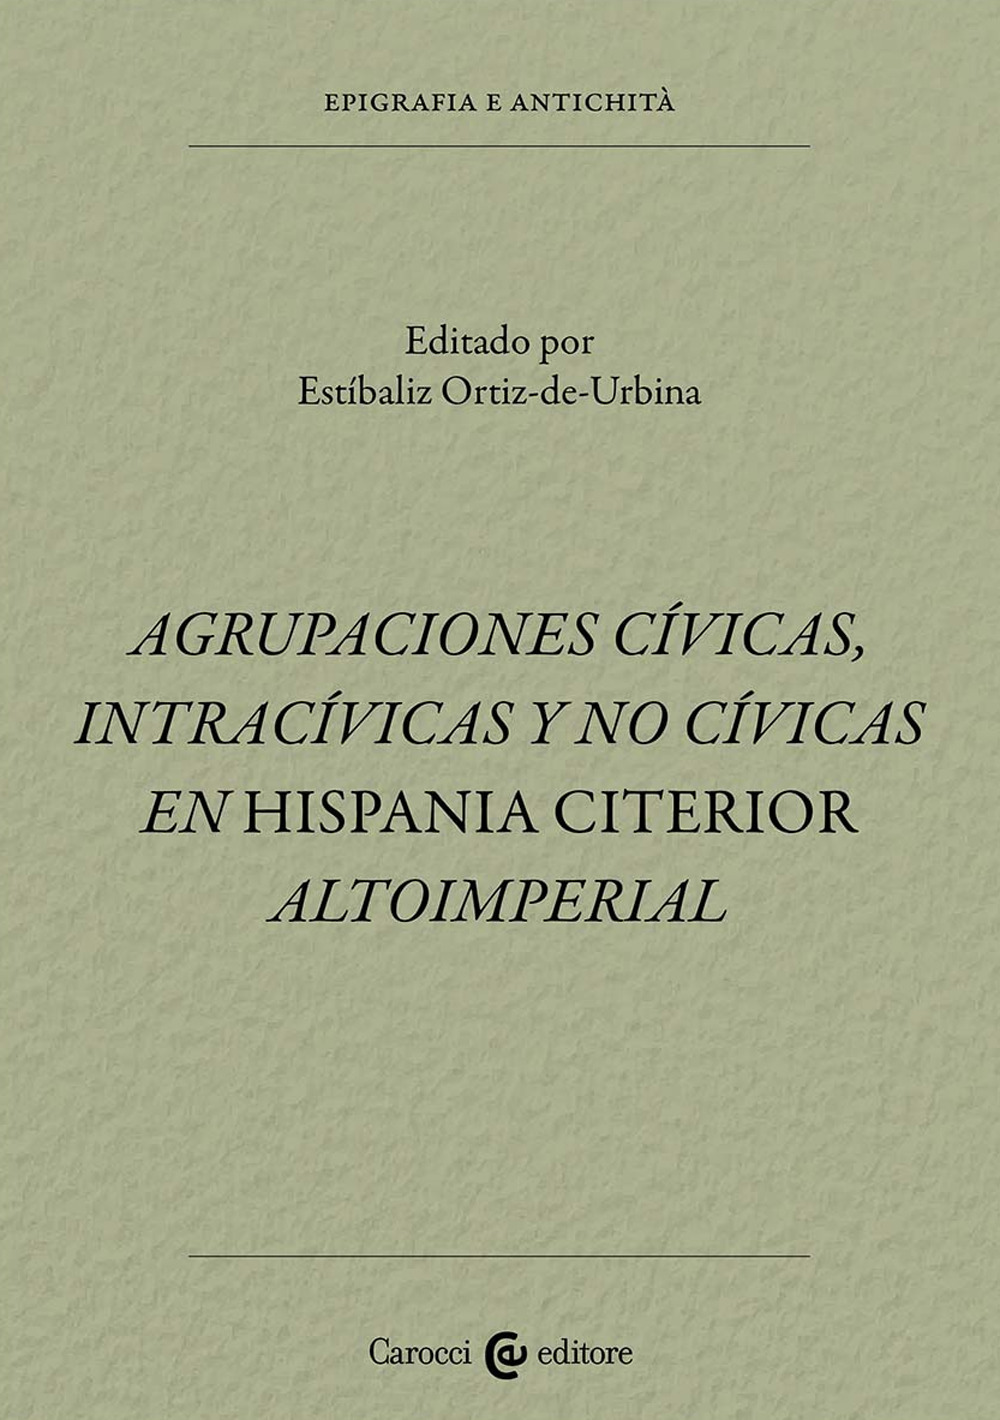 Agrupaciones civicas, intracívicas y no civicas en Hispania citerior altoimperial